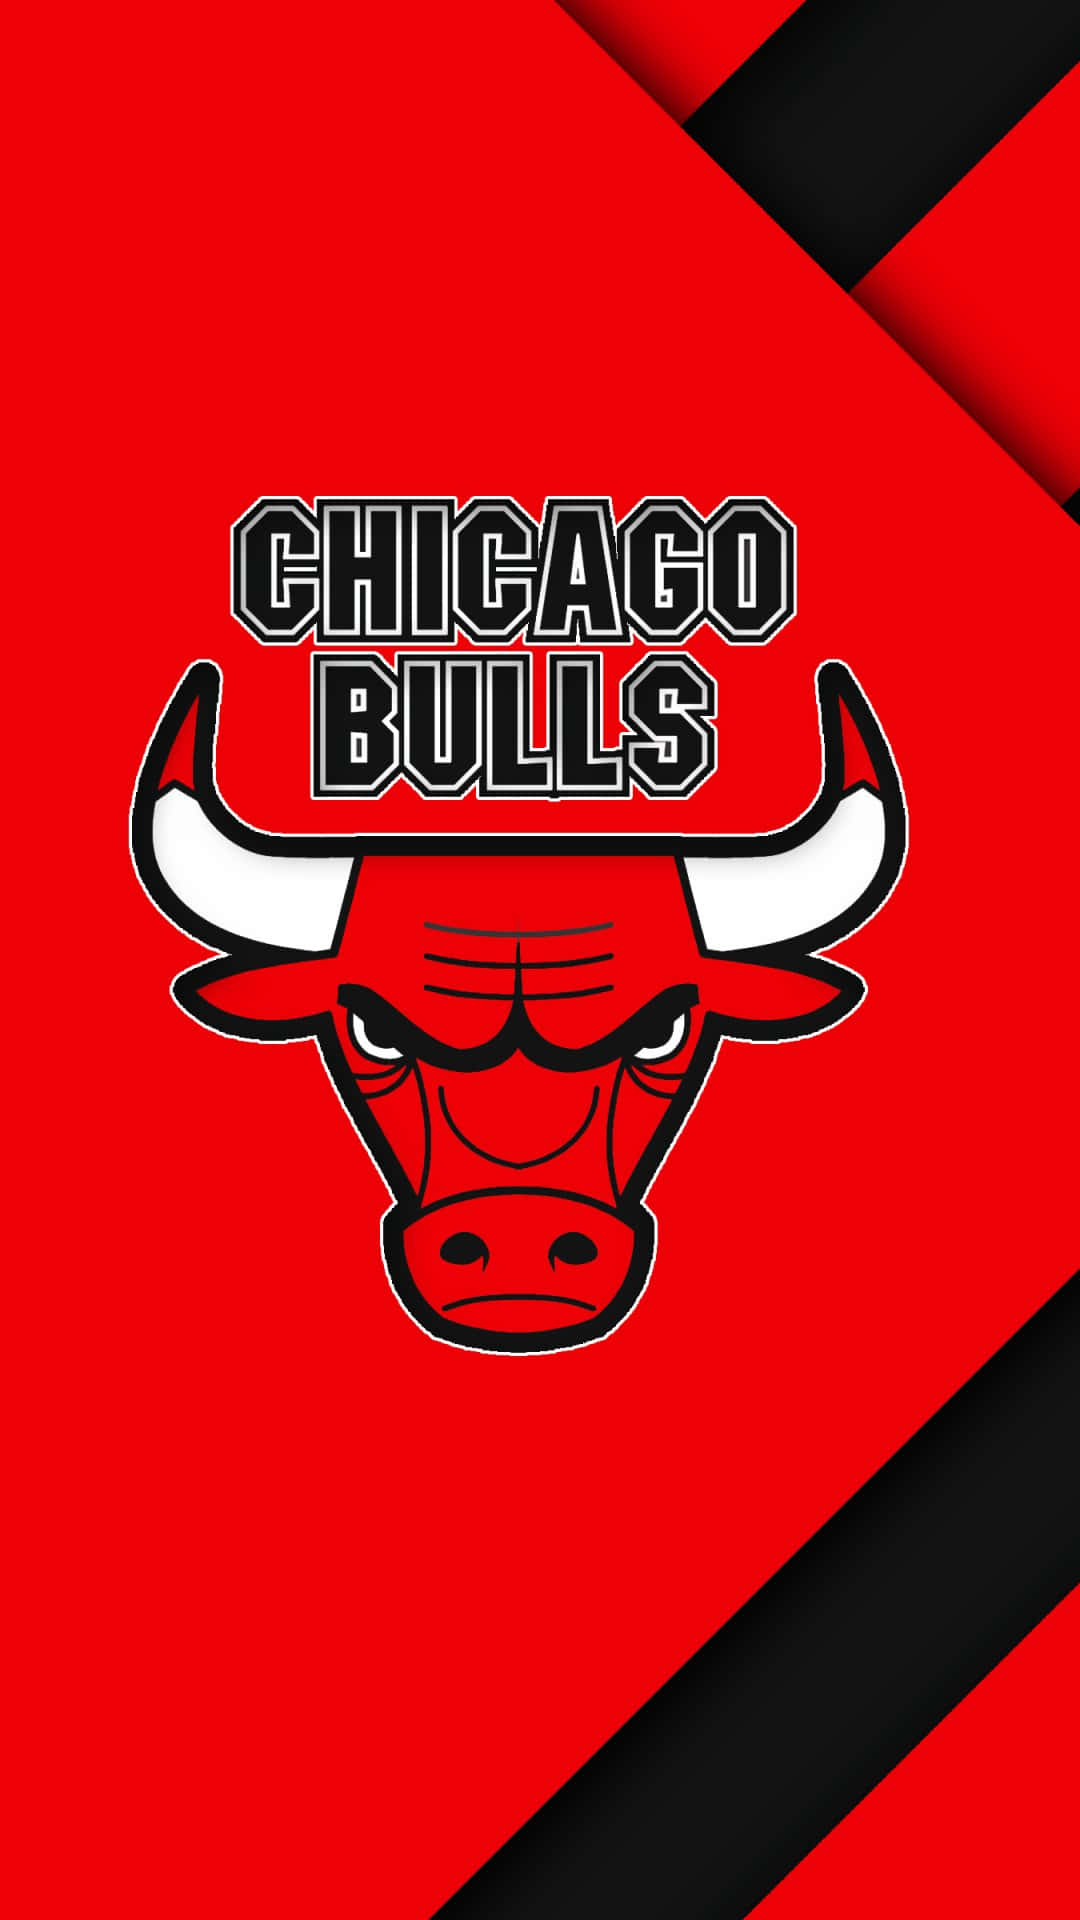 Elteléfono Oficial De Los Chicago Bulls Fondo de pantalla